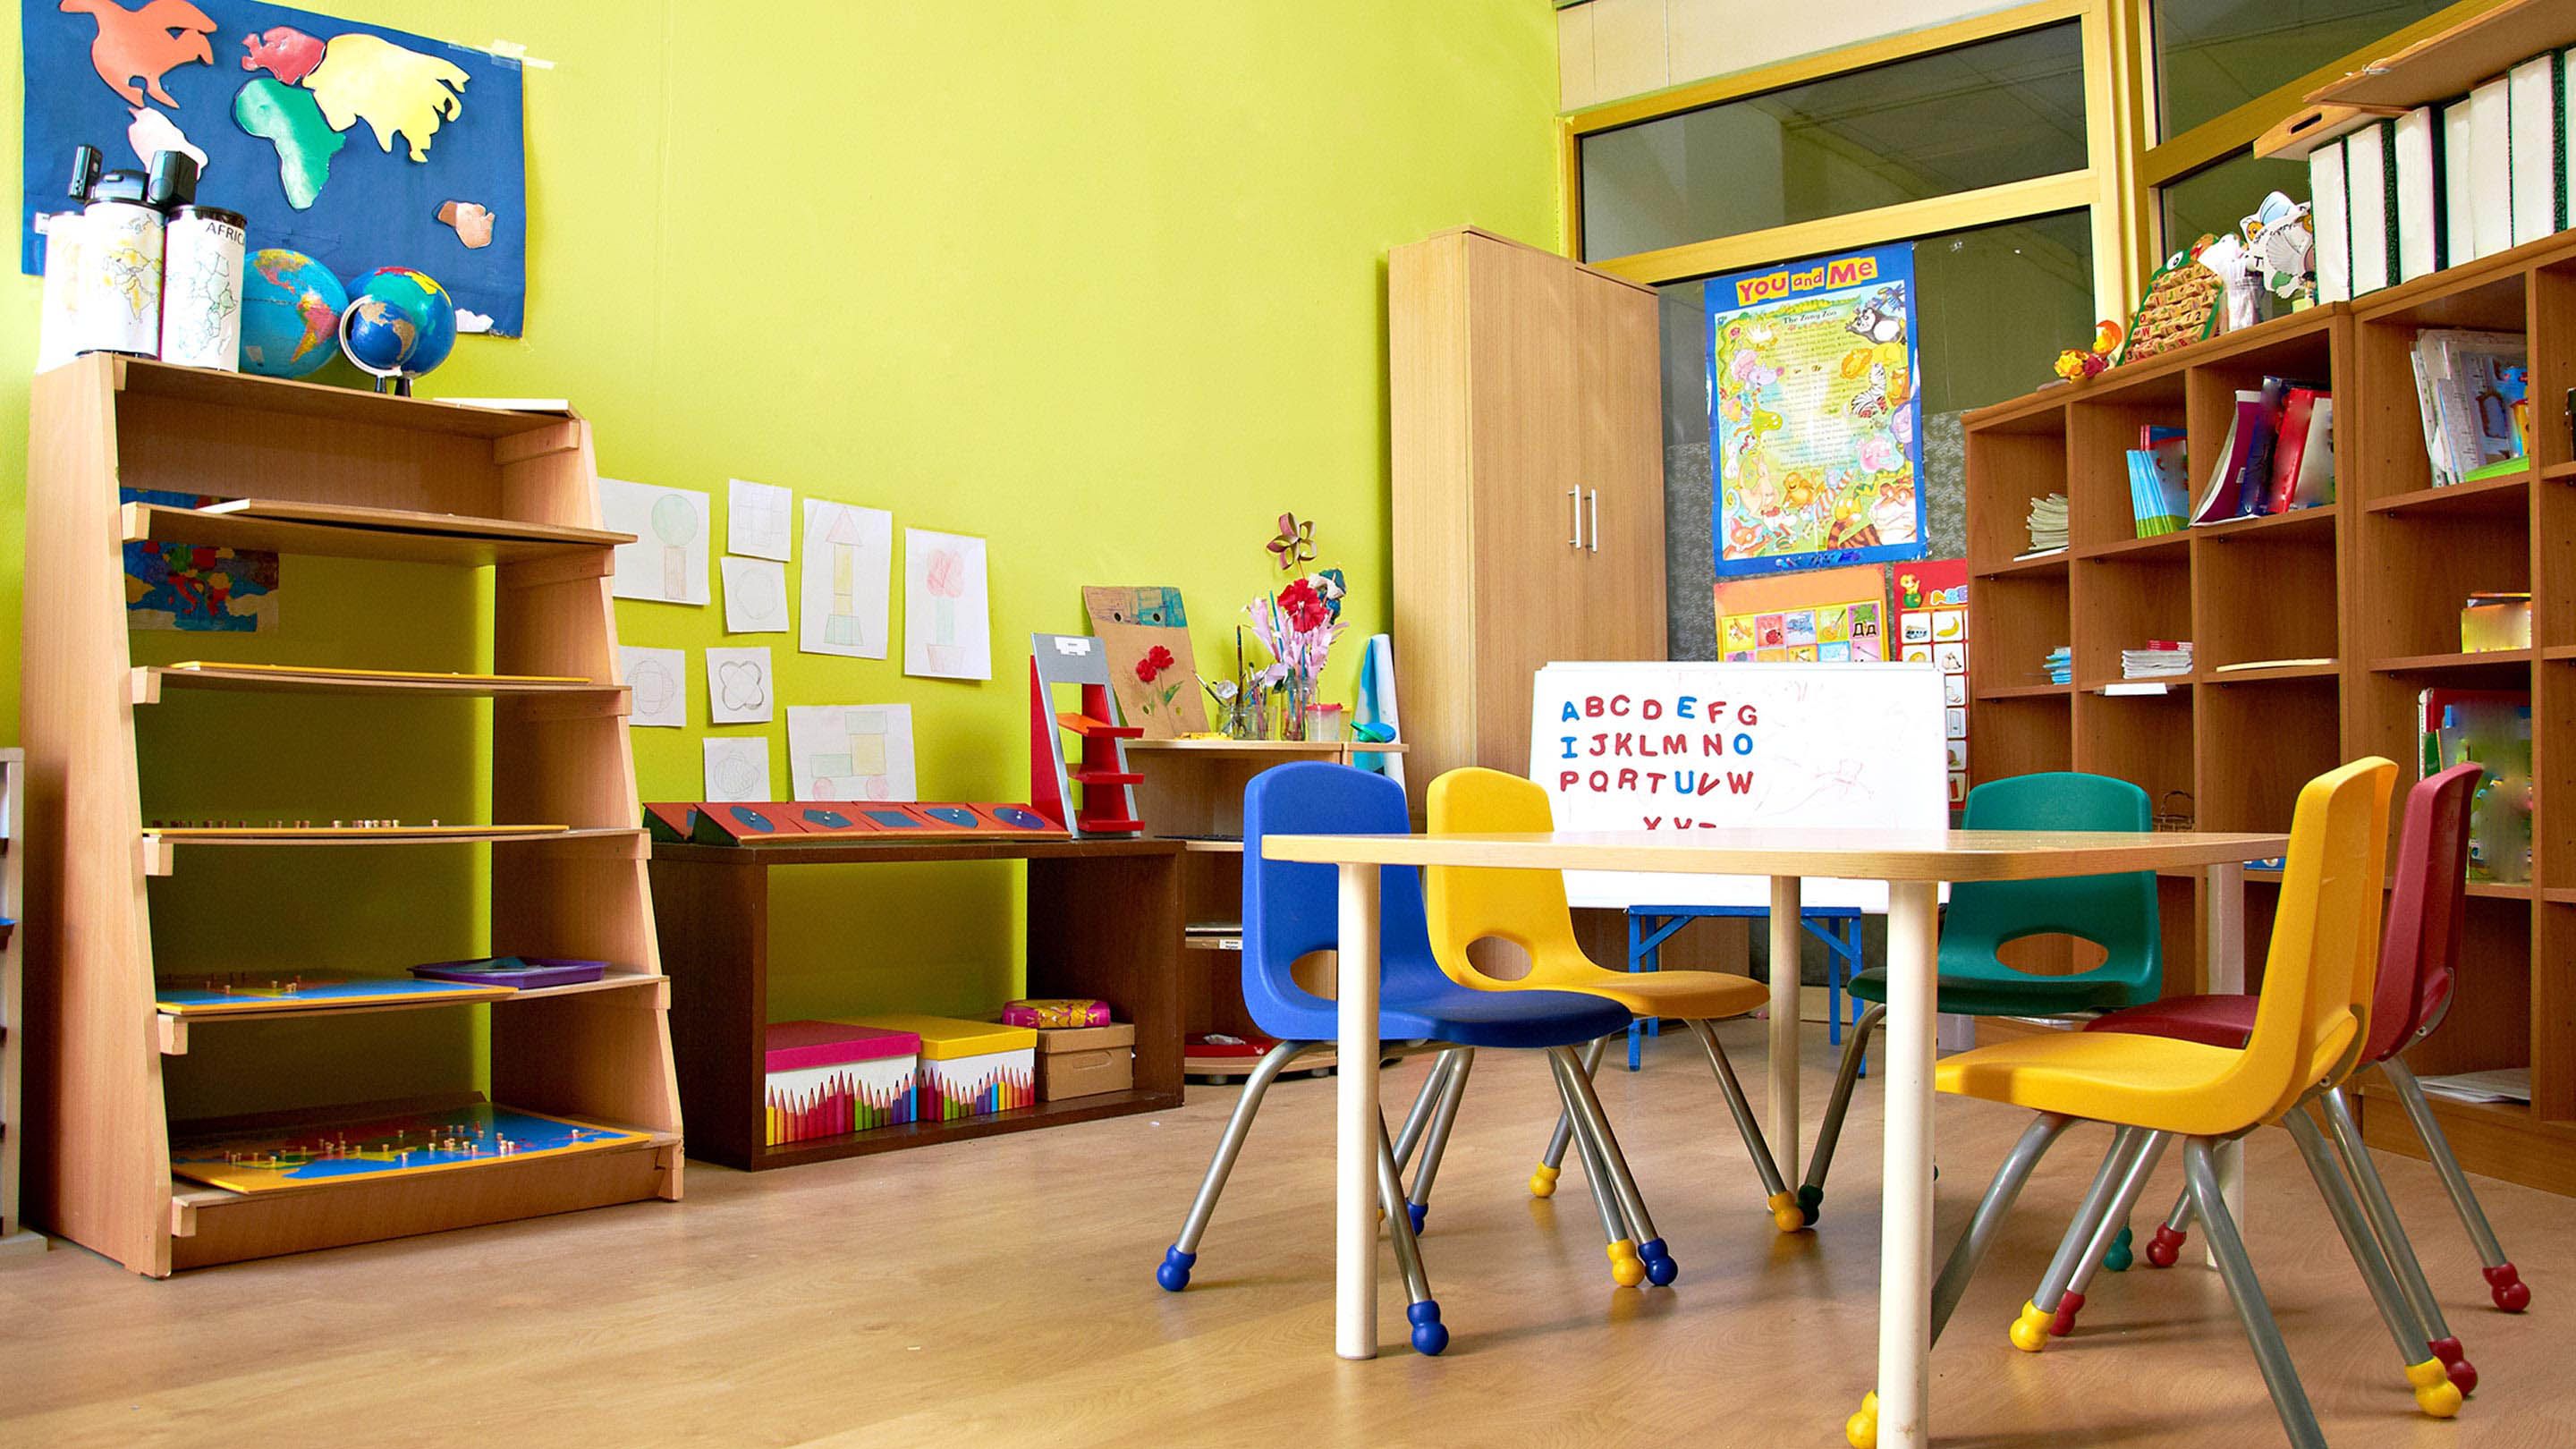 Decrease Classroom Clutter to Increase Creativity | Edutopia2880 x 1620